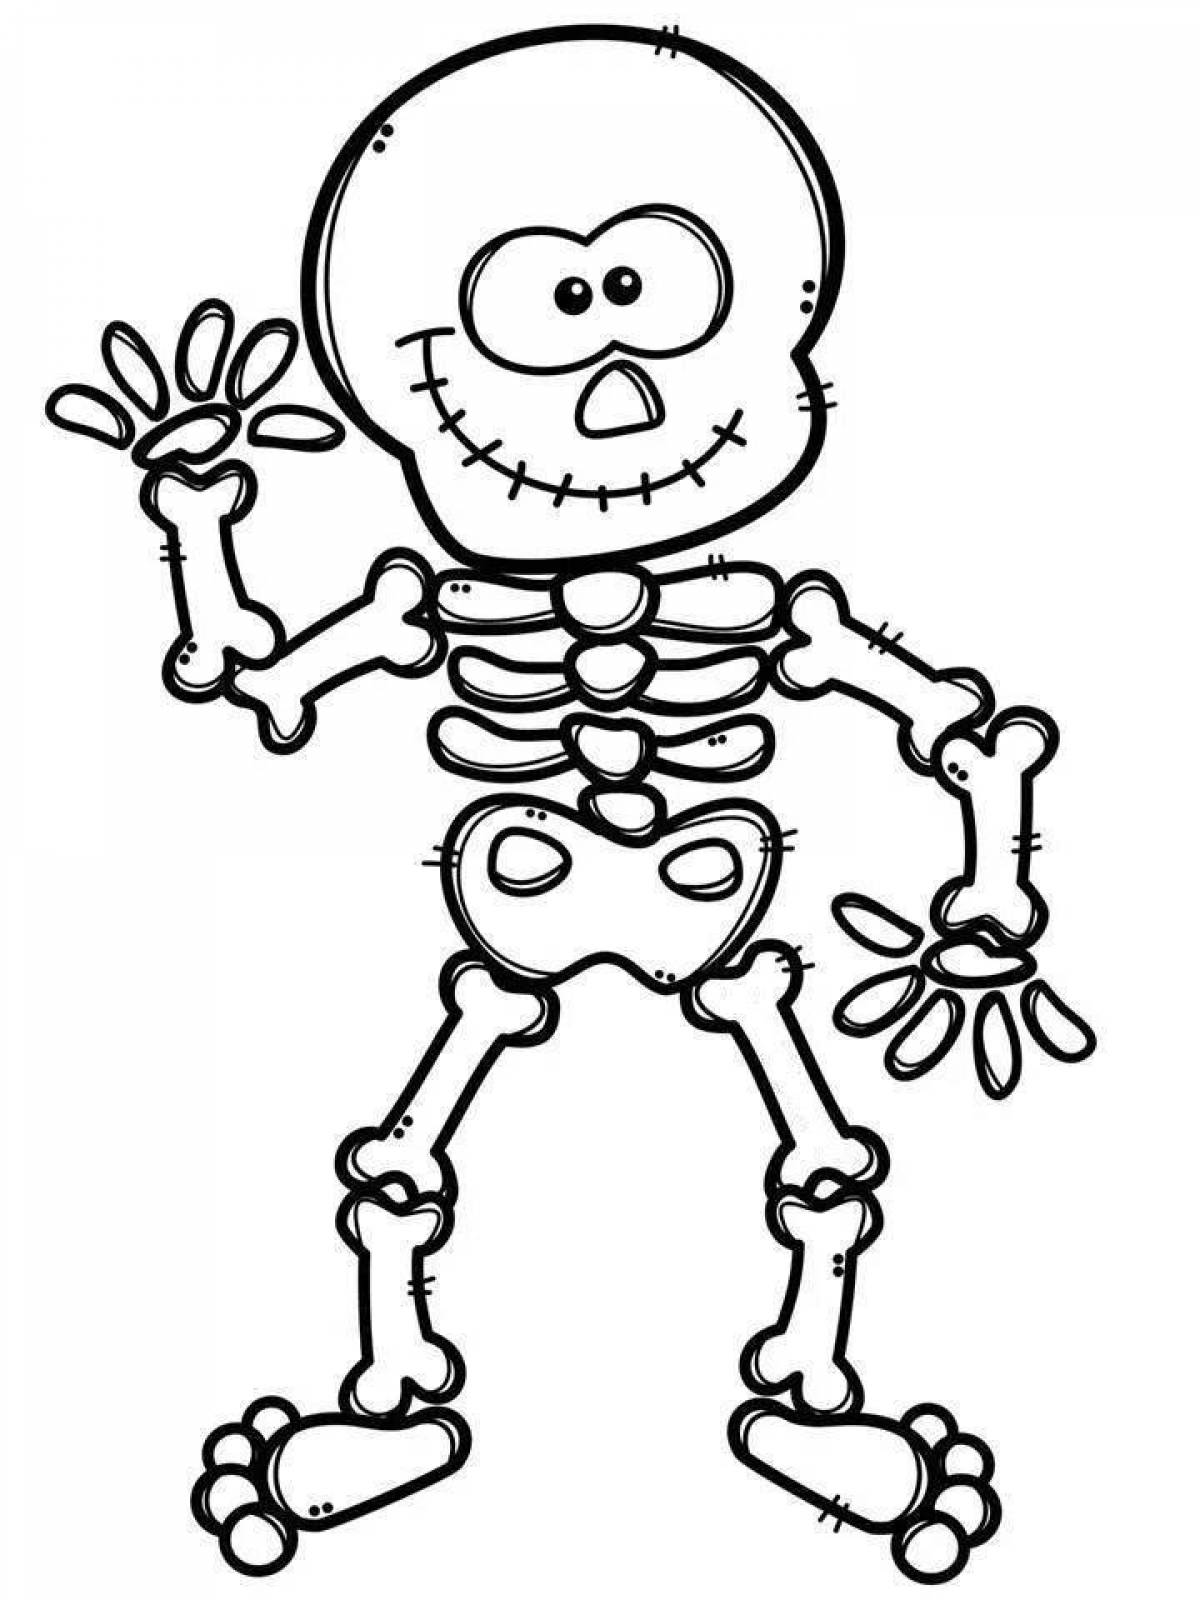 Human skeleton #6